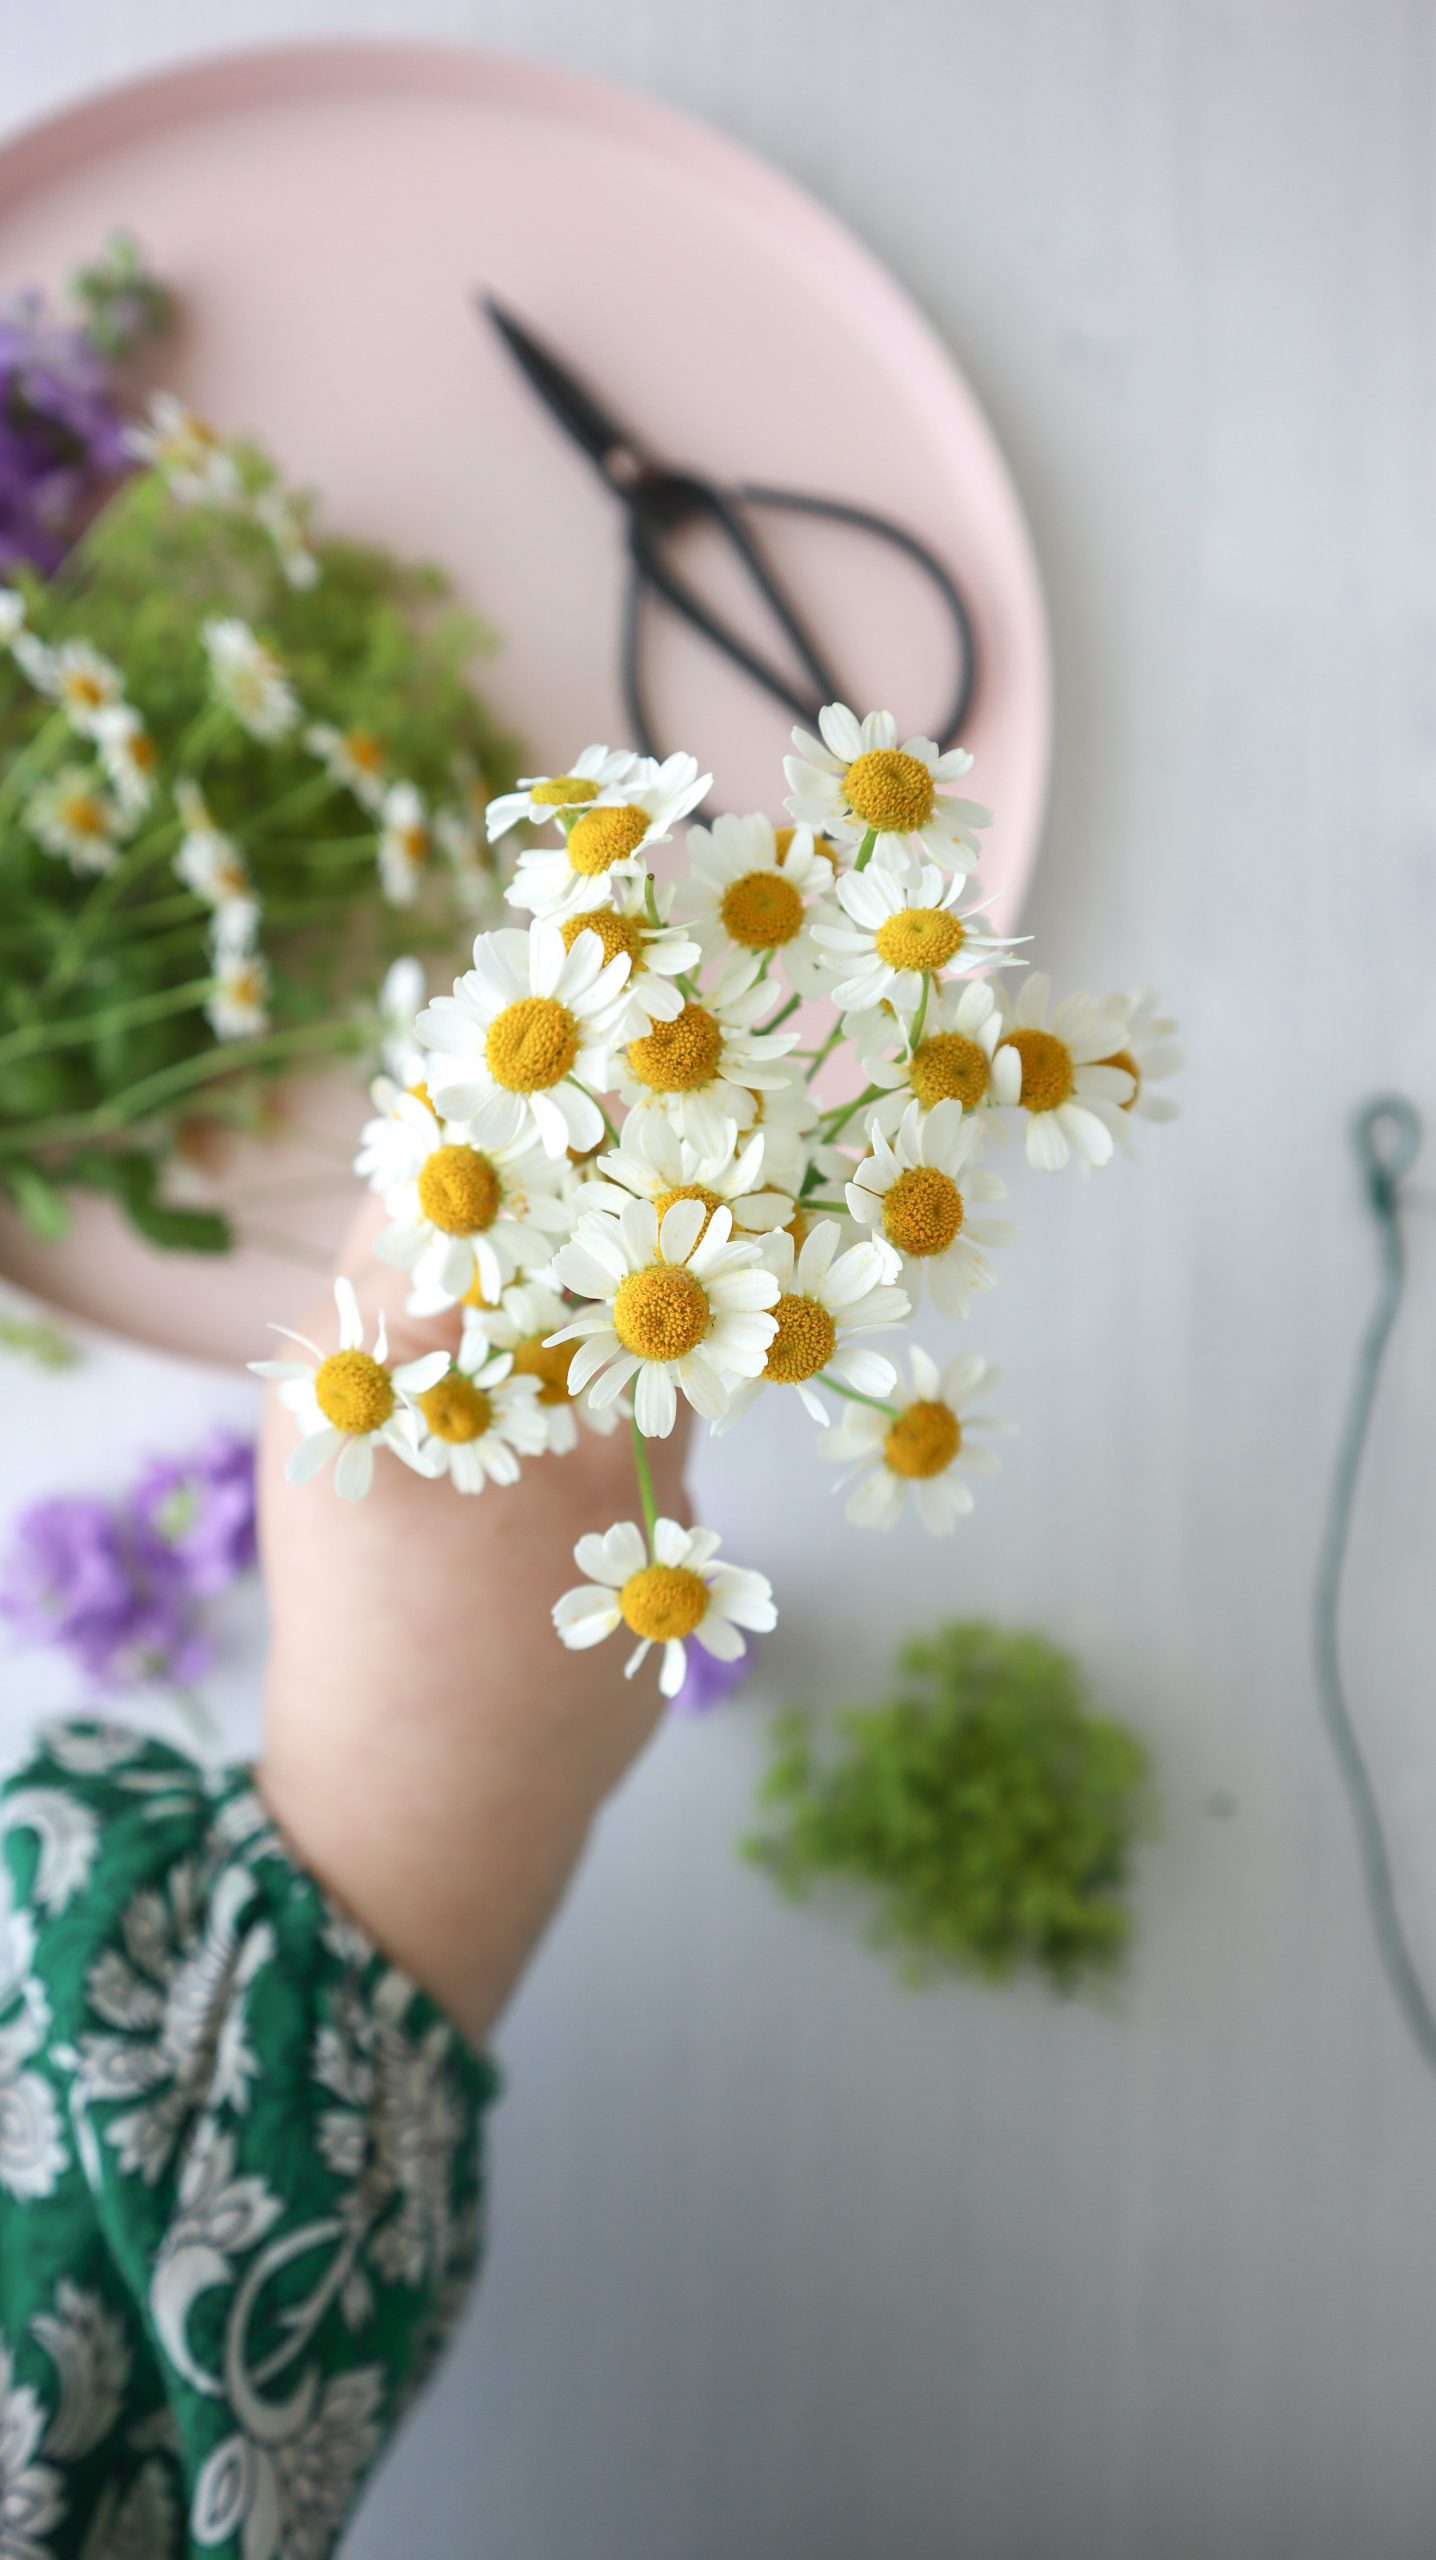 So einfach ist Blumenkranz binden: Als Haarschmuck oder Deko für JGA, Hochzeit, Festivals & Midsommar, mit dieser Anleitung ist Blumenkränze selber machen ganz leicht!